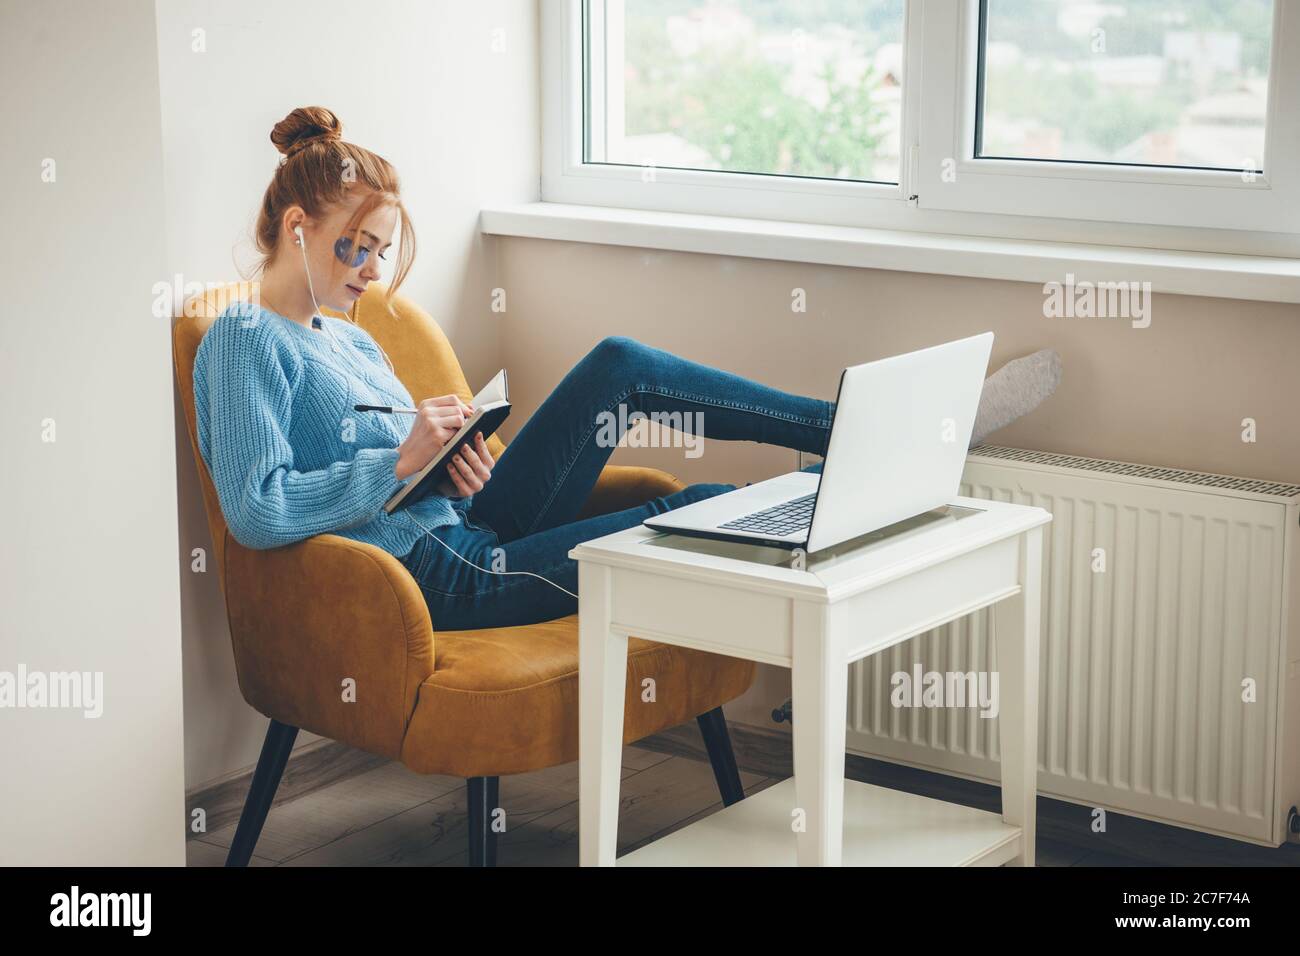 Donna caucasica con cocci e capelli rossi che indossano macchie di idrogel oculari mentre si scrive nel libro e si utilizza un computer portatile con auricolari Foto Stock